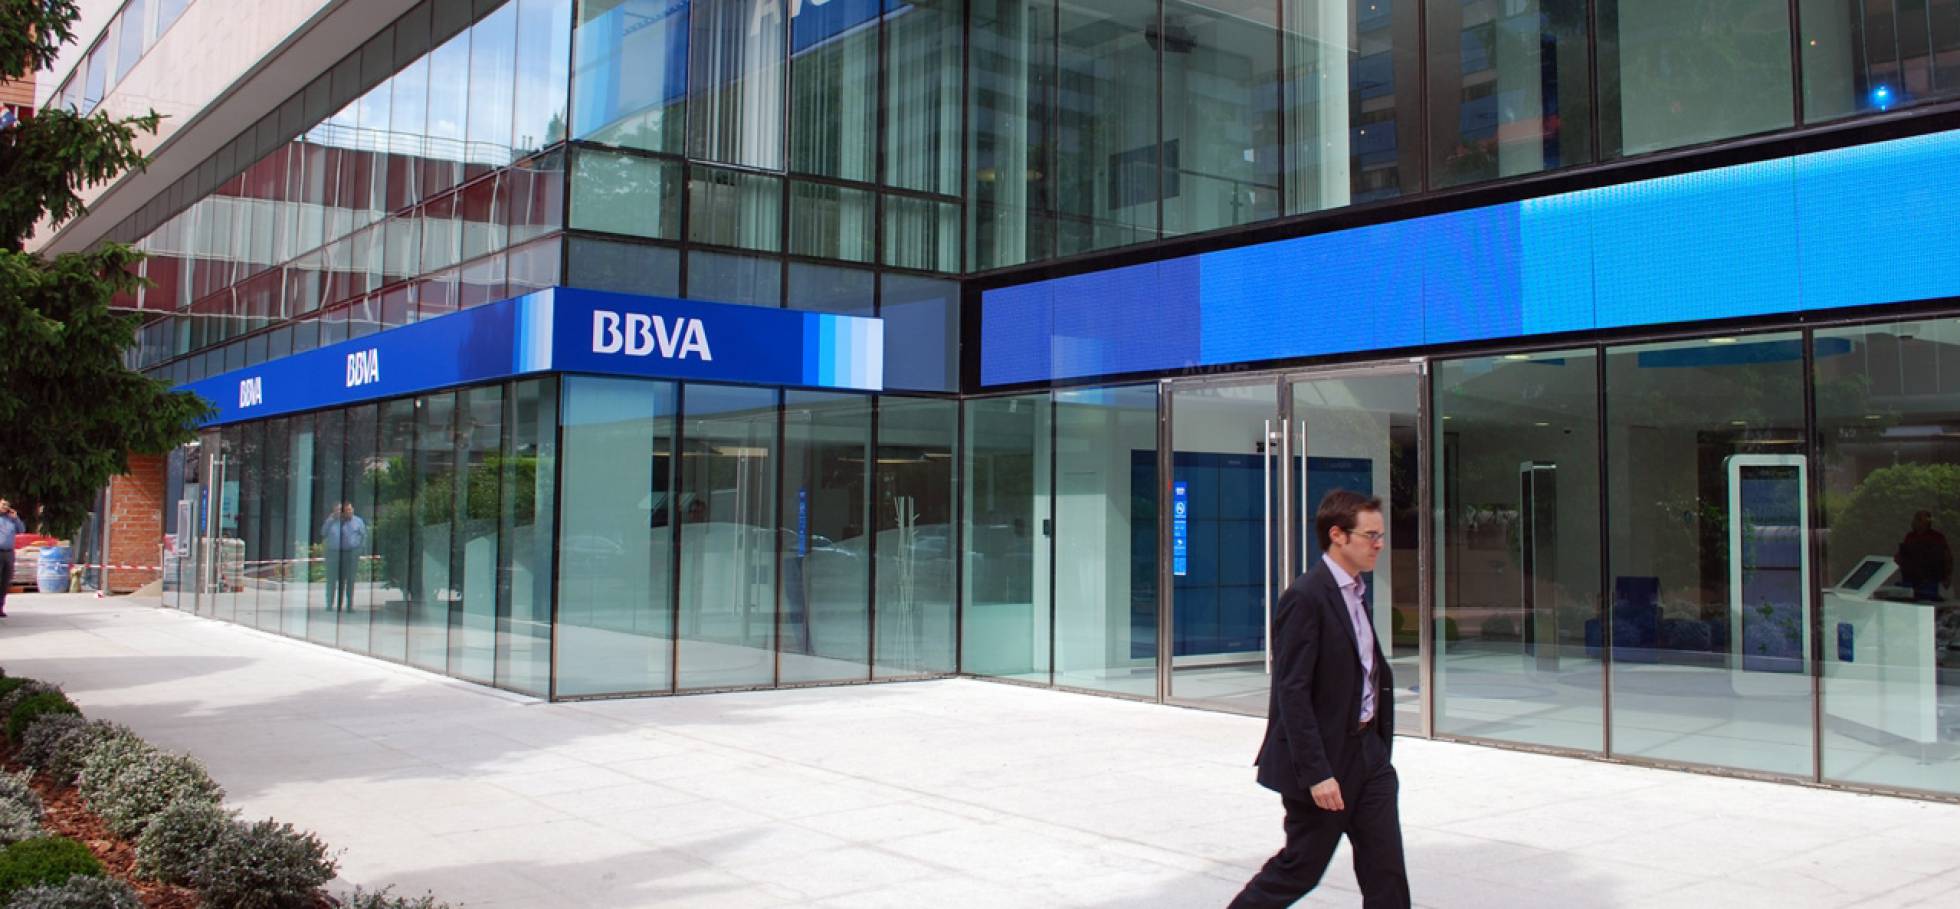 BBVA银行被西班牙防洗钱委员会Sepblac罚了1310万欧